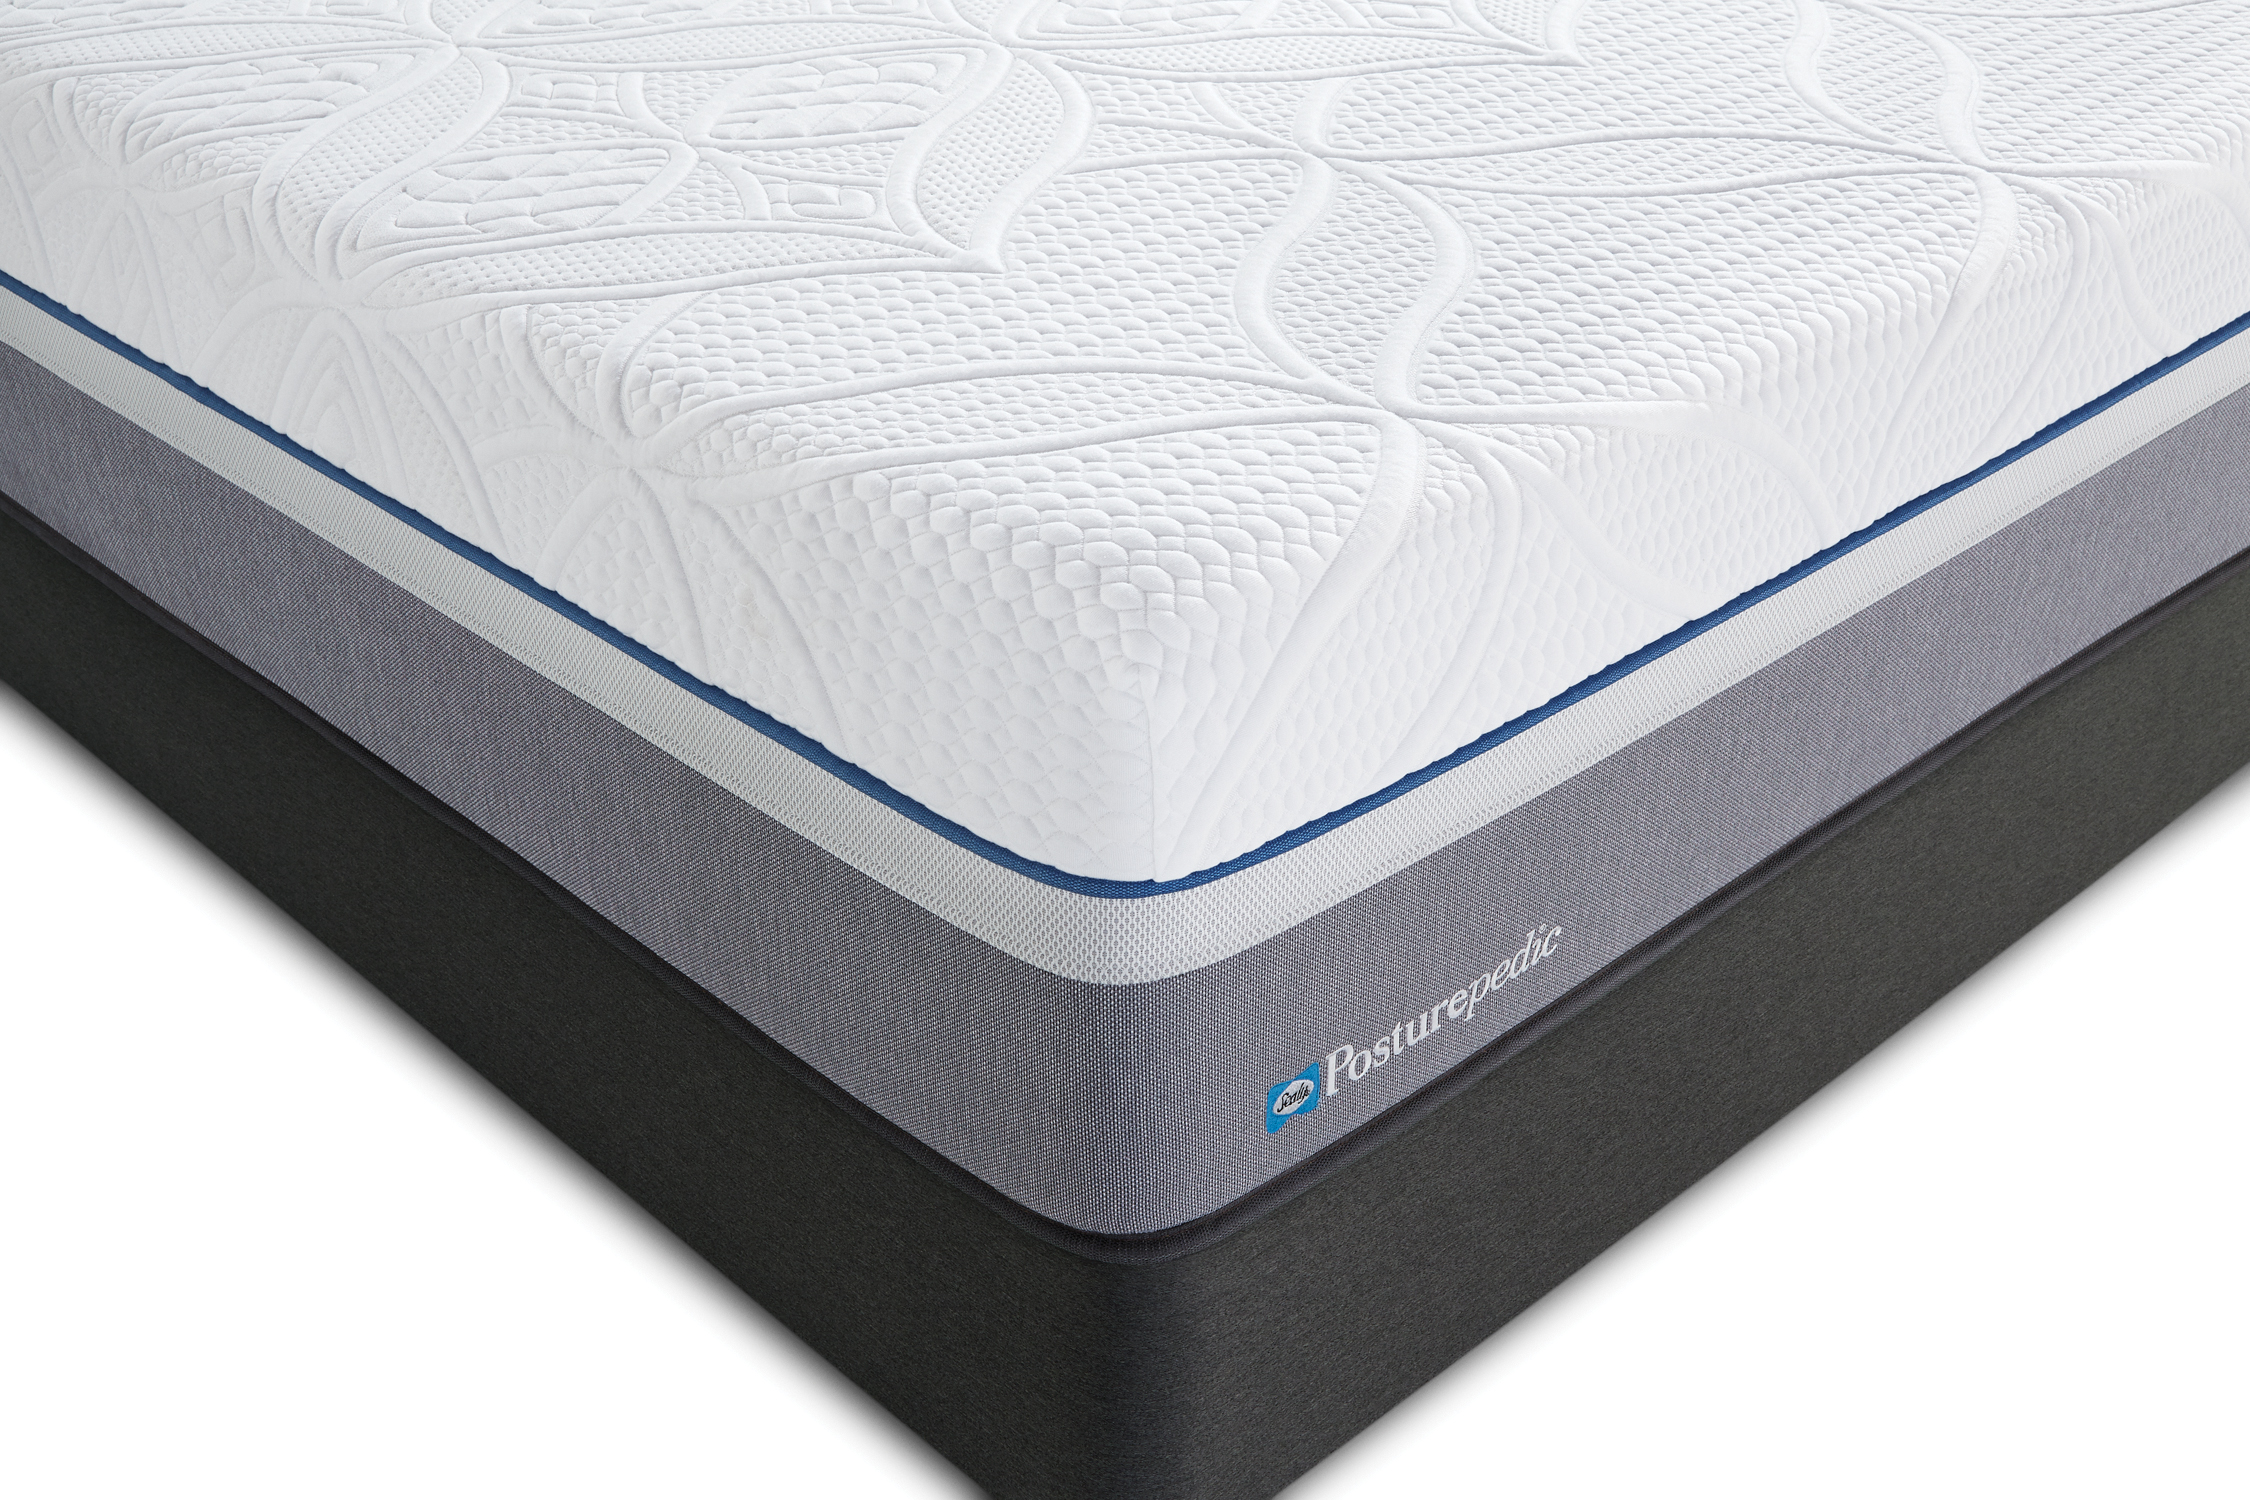 sealy 12 inch hybrid mattress queen